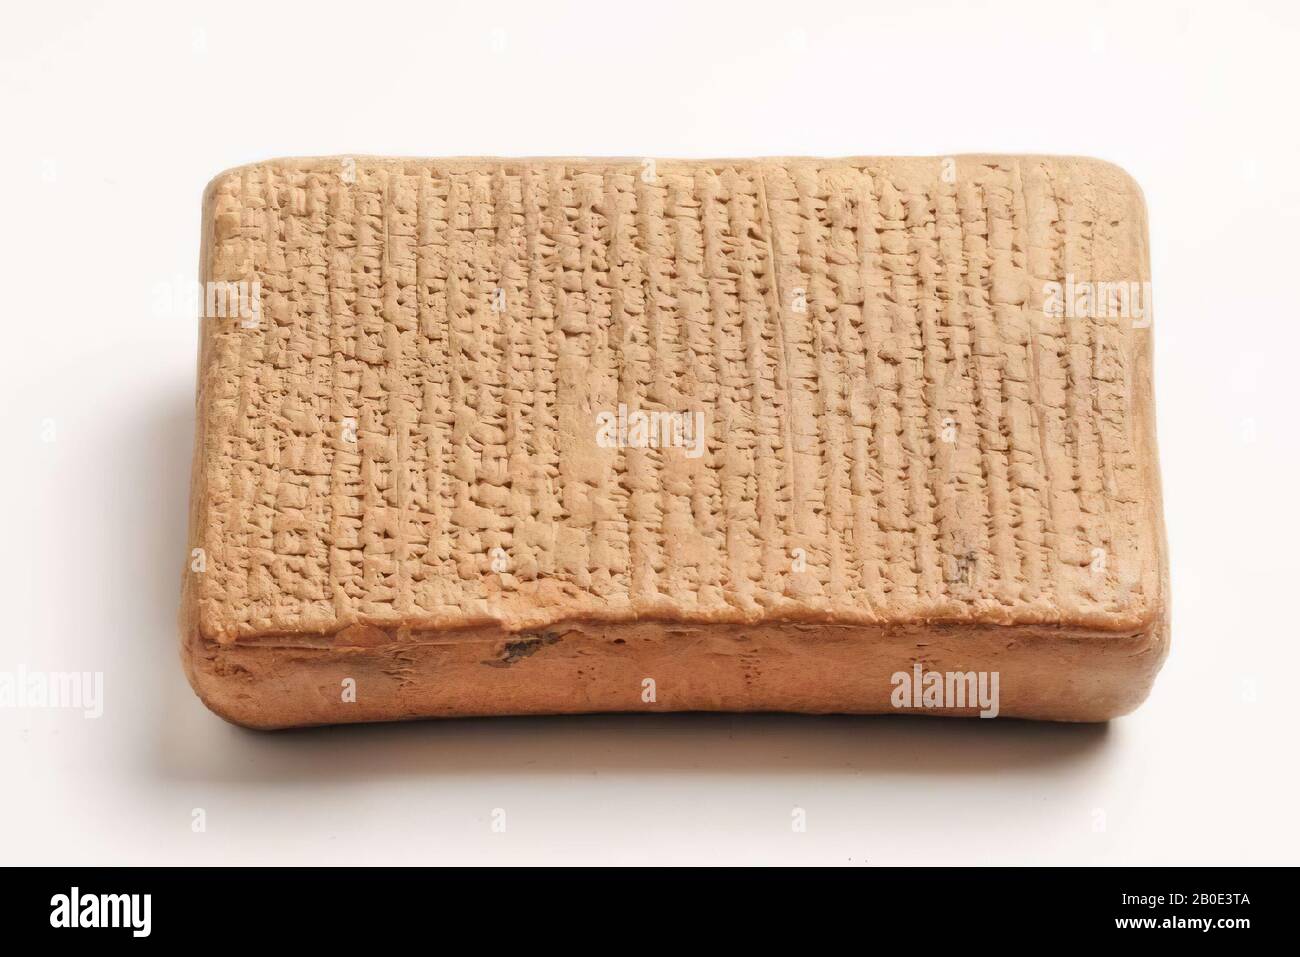 Antiguo cercano Oriente, inscripción, loza, arcilla, falso, 11.3 x 7.1 x 3.2 cm, ubicación, Irak Foto de stock